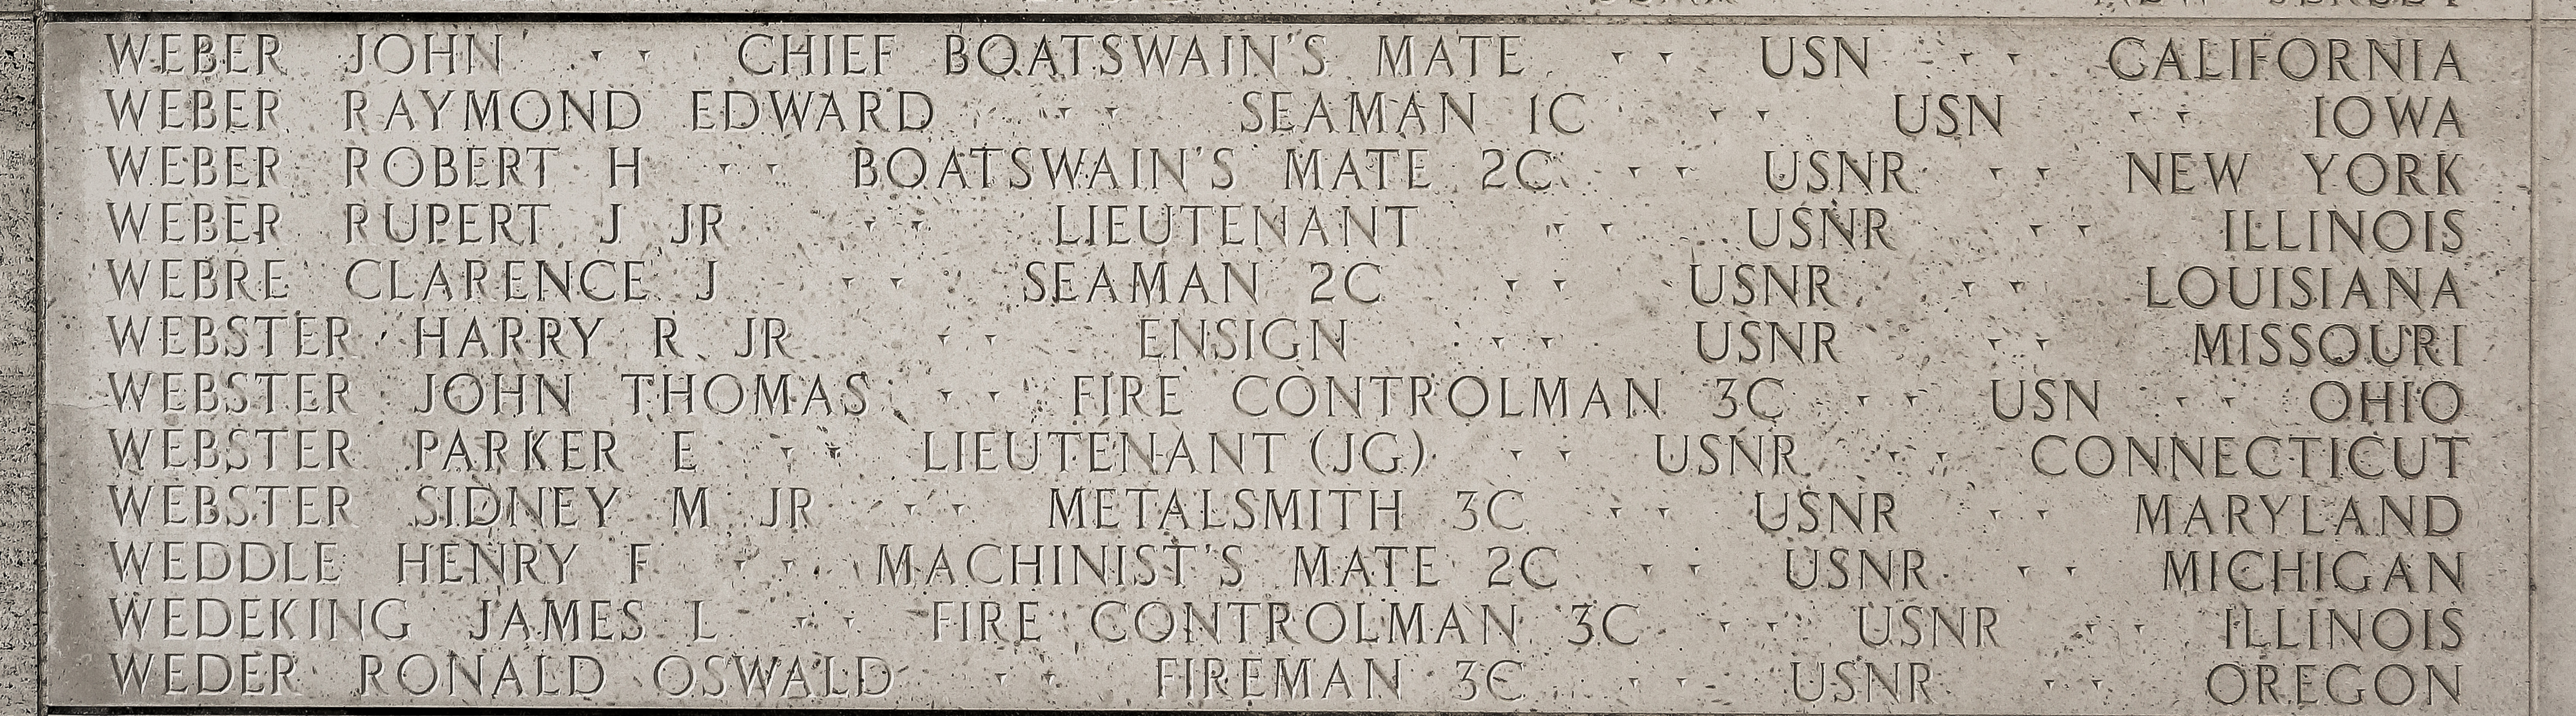 Robert H. Weber, Boatswain's Mate Second Class